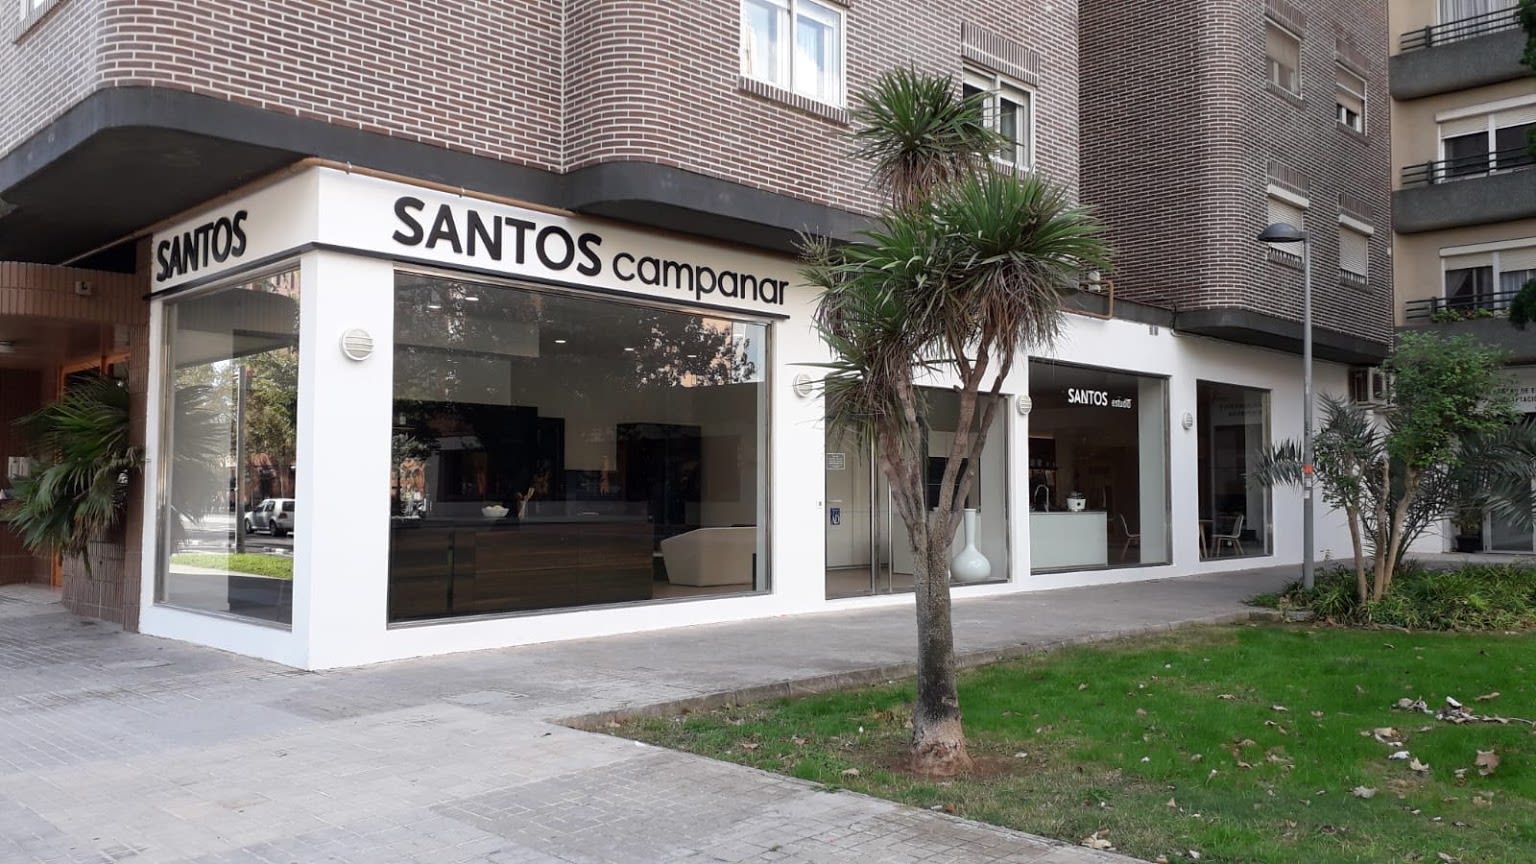 SANTOS Valencia - Campanar